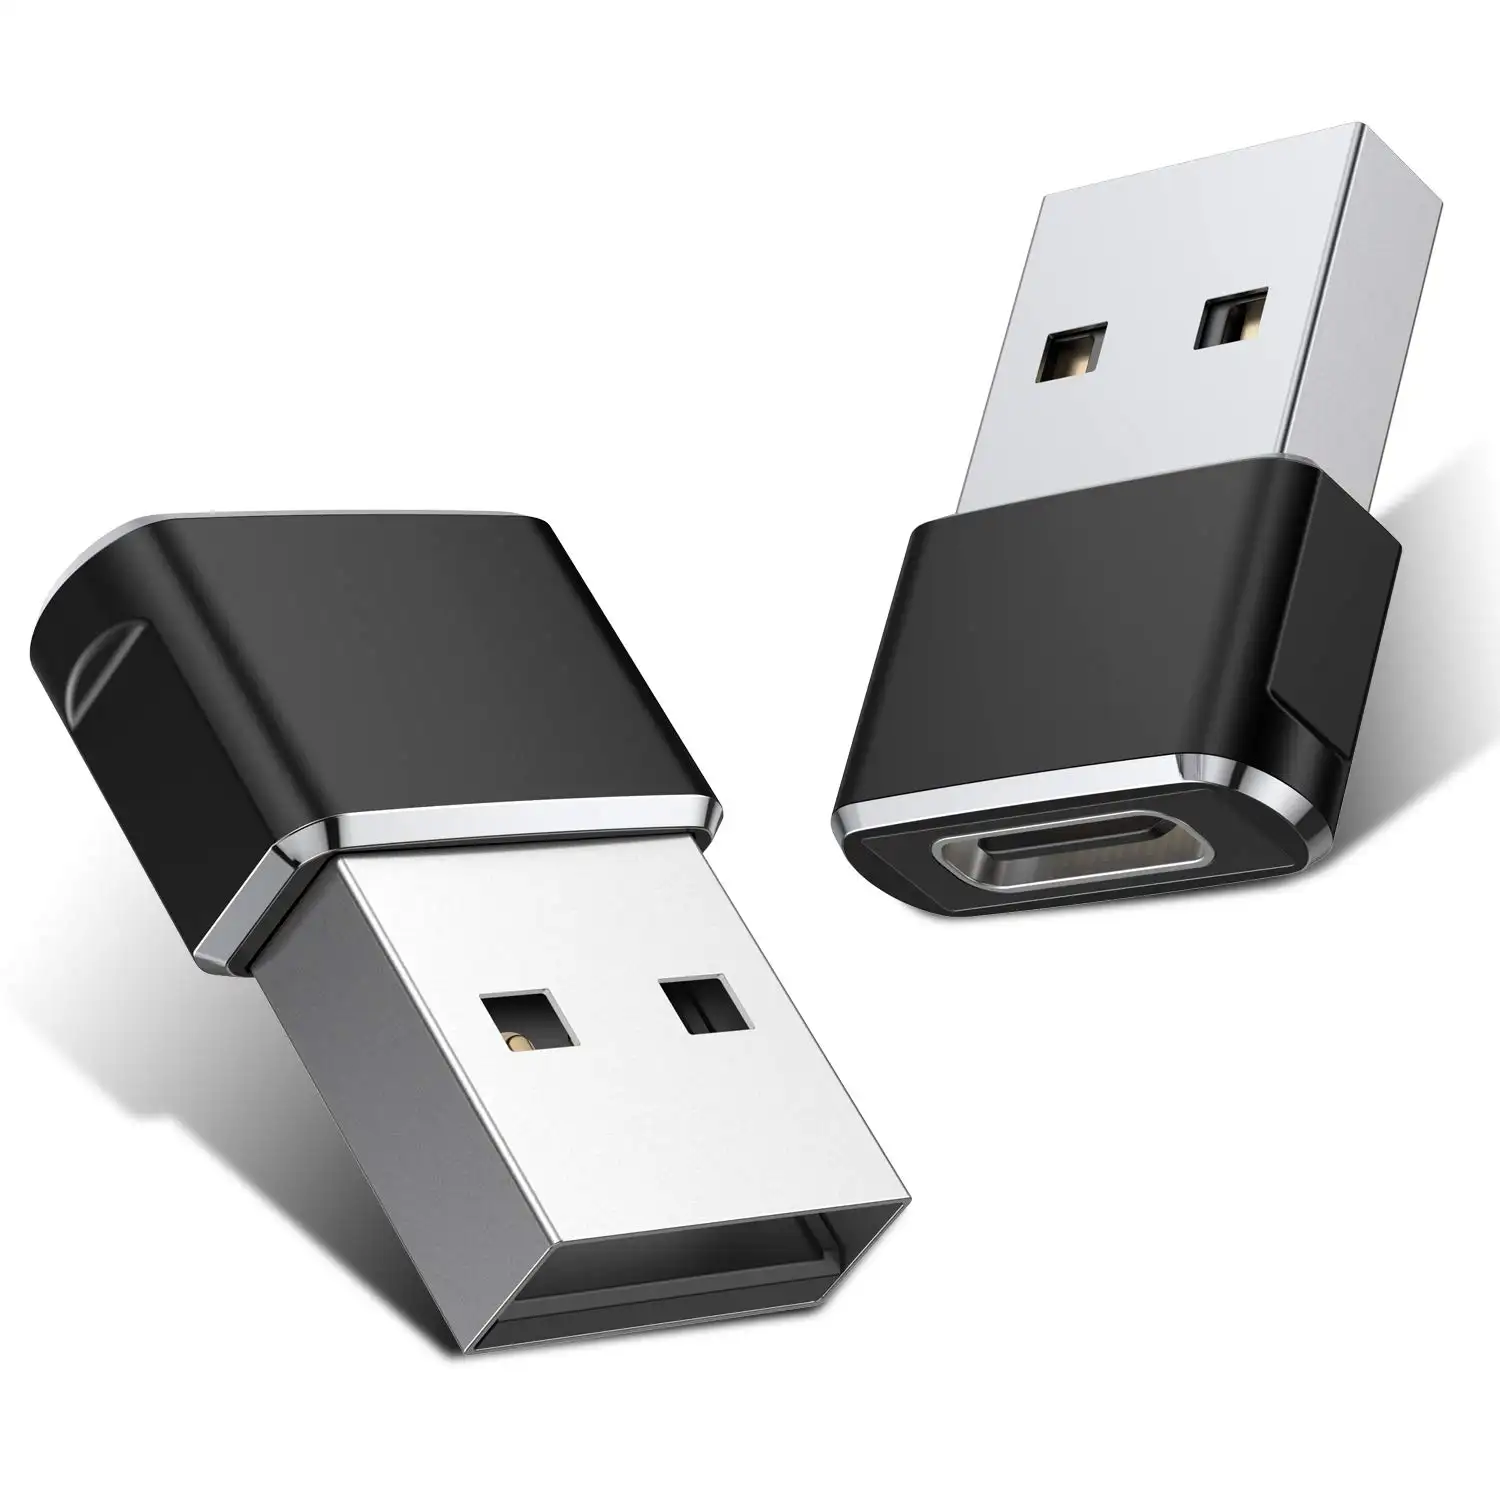 Adaptateur USB C femelle vers USB A mâle Adaptateur de câble de chargeur en alliage d'aluminium Type C pour iP 11 12